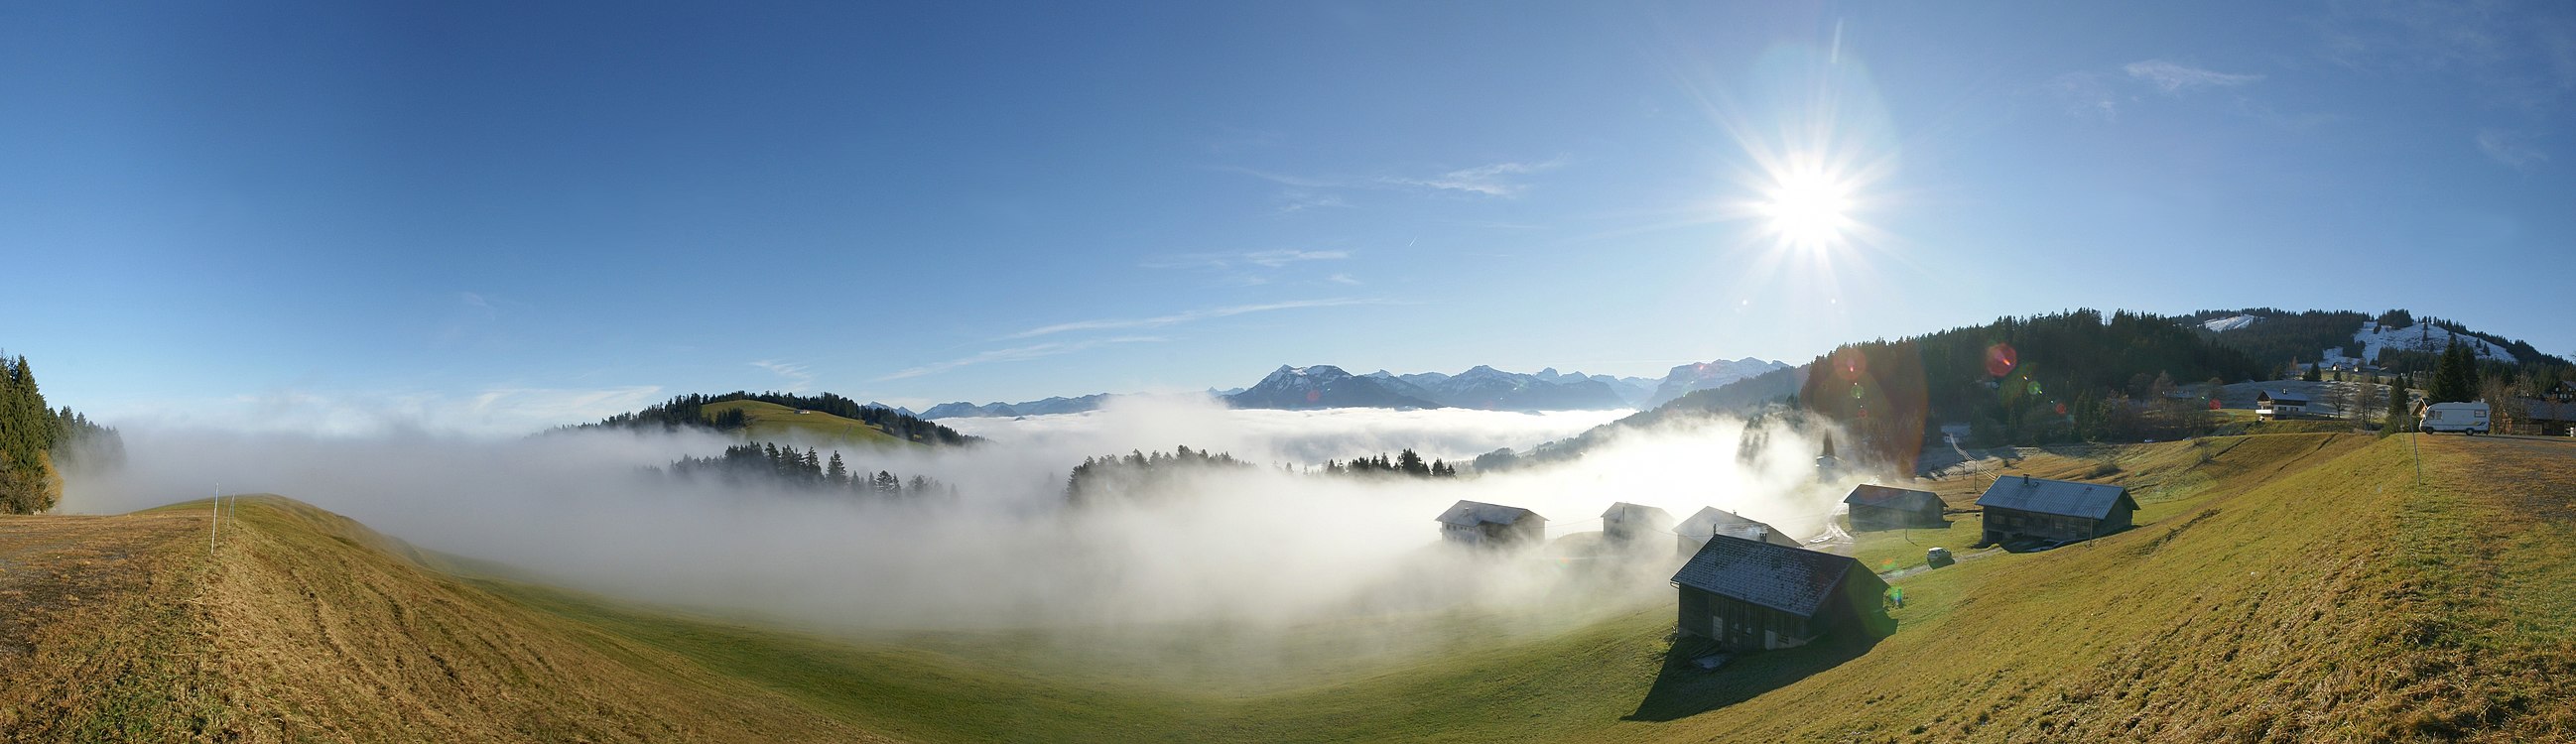 180°-Panorama am Bödele, gelegen zwischen Dornbirn und Schwarzenberg, Vorarlberg, Österreich. Die 2 Bergspitzen in der Bildmitte sind die Winterstaude 1877m und rechts der Hohe Ifen 2230m. Das Bergmassiv unter der Sonne ist die Nordflanke der Kanisfluh. Am rechten Bildrand zu sehen das Skigebiet Bödele mit dem Hochälpelekopf 1464m.